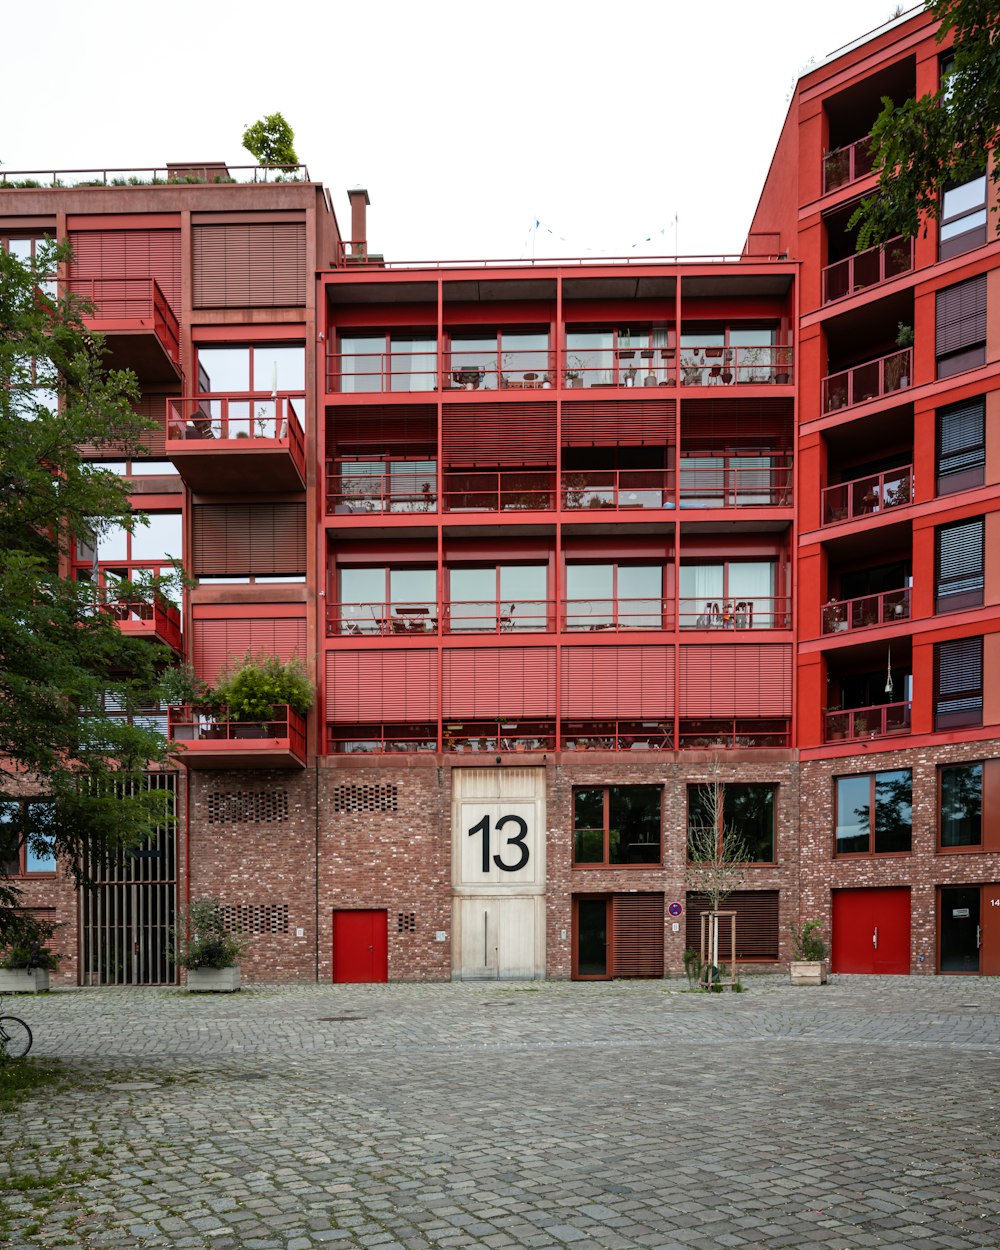 un bâtiment rouge avec un numéro 13 dessus